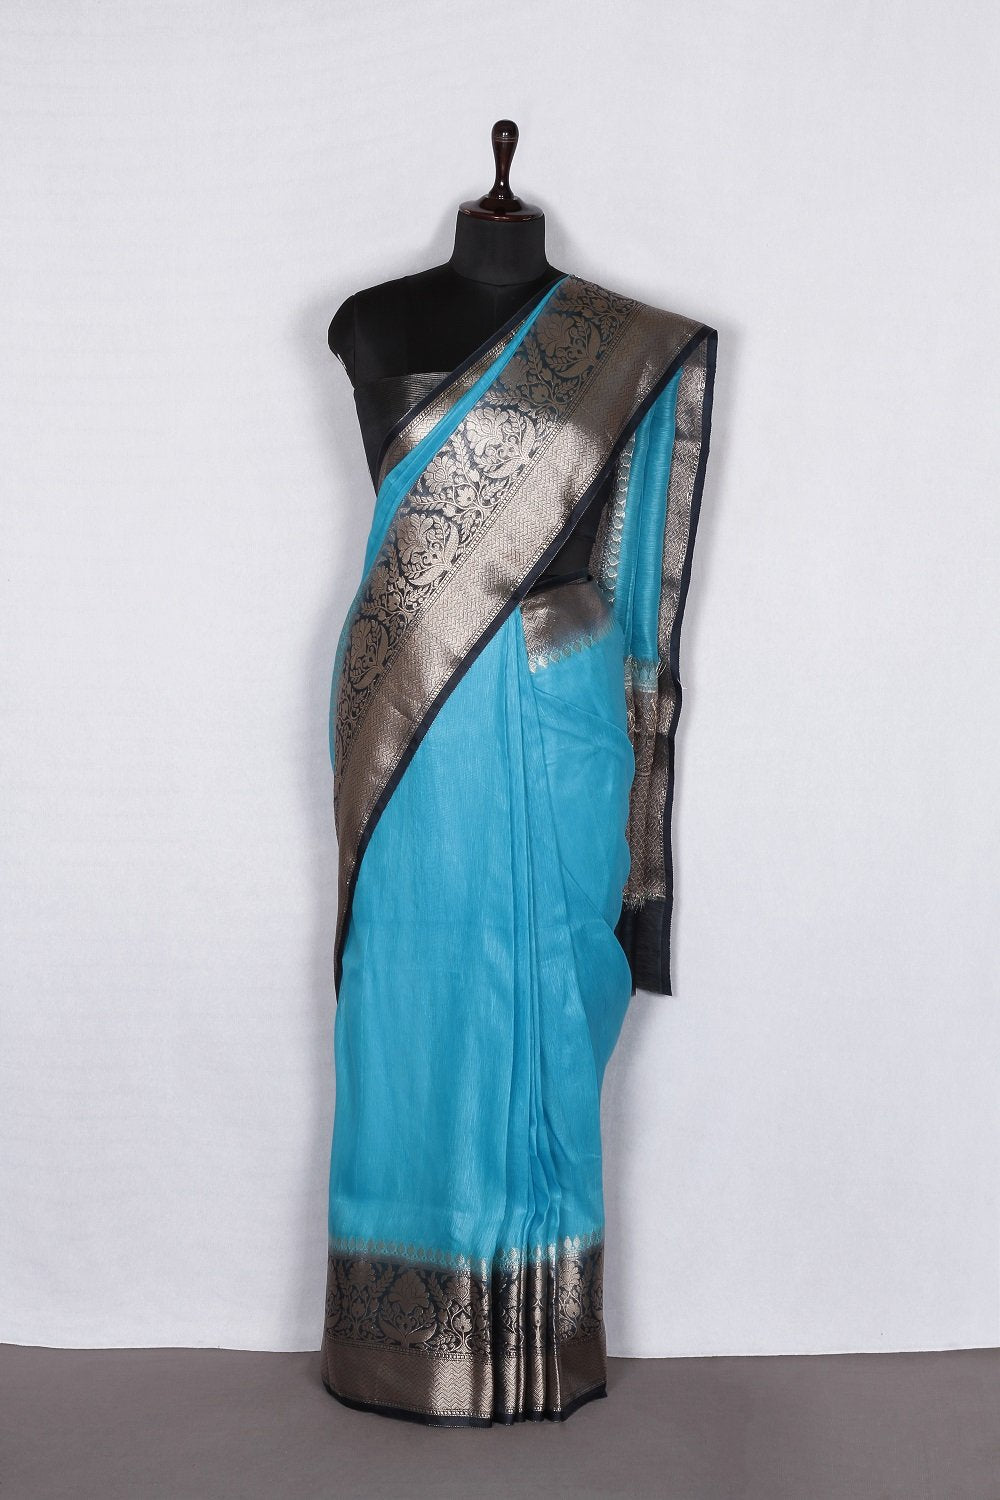 Banarasi Silk Linen Saree | Black and Gold Zari Border | Blue Body | KIHUMS Saree